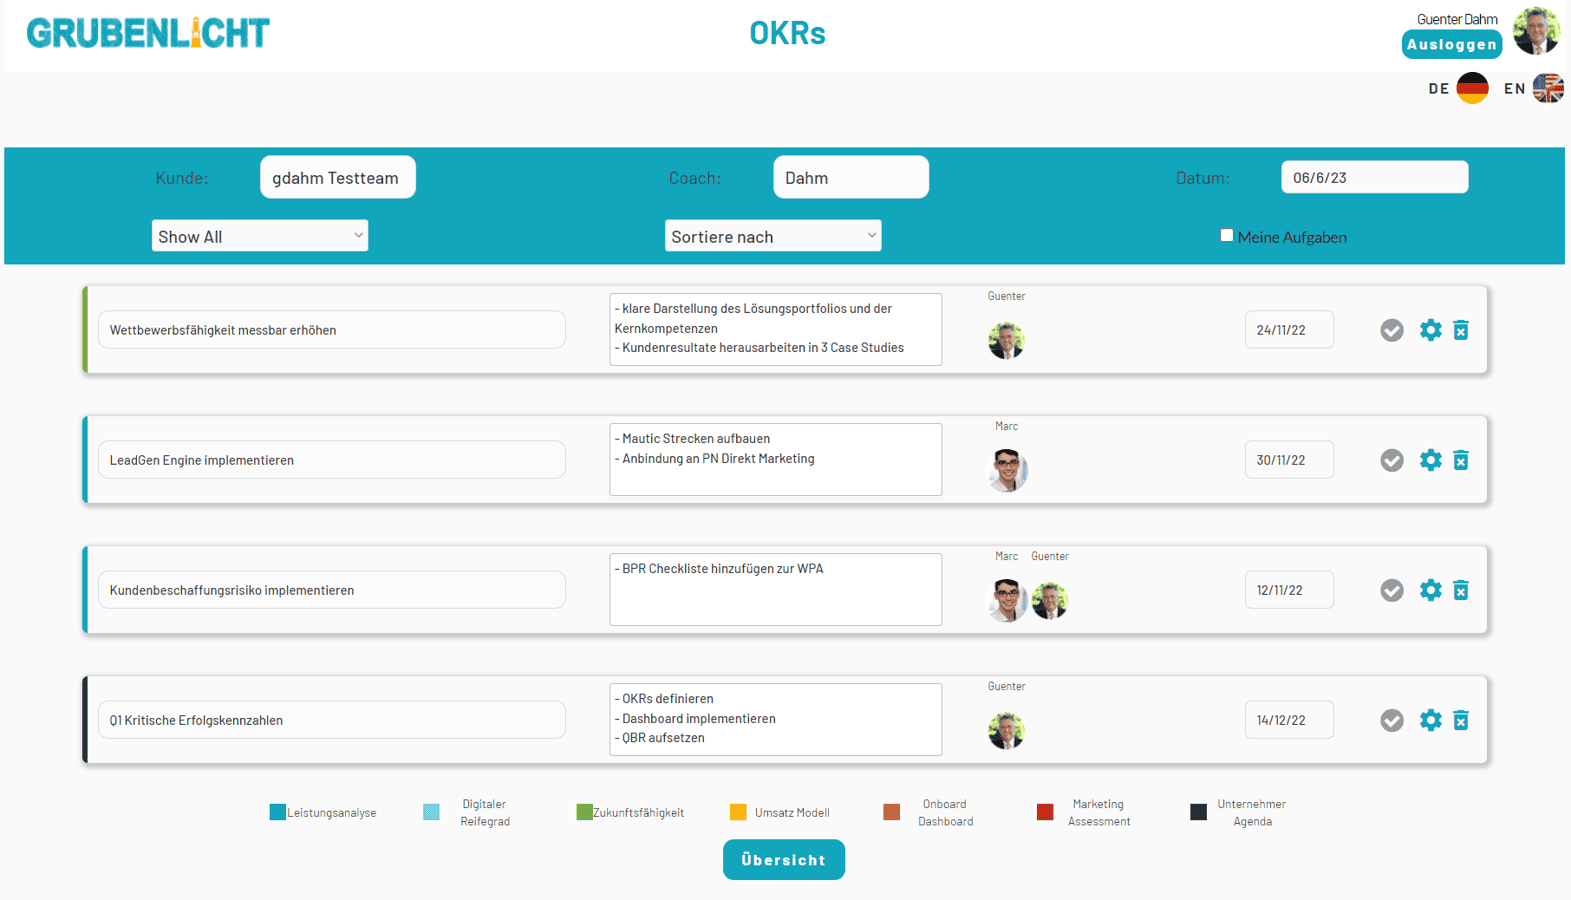 Grubenlicht OKRs for Sales & Marketing